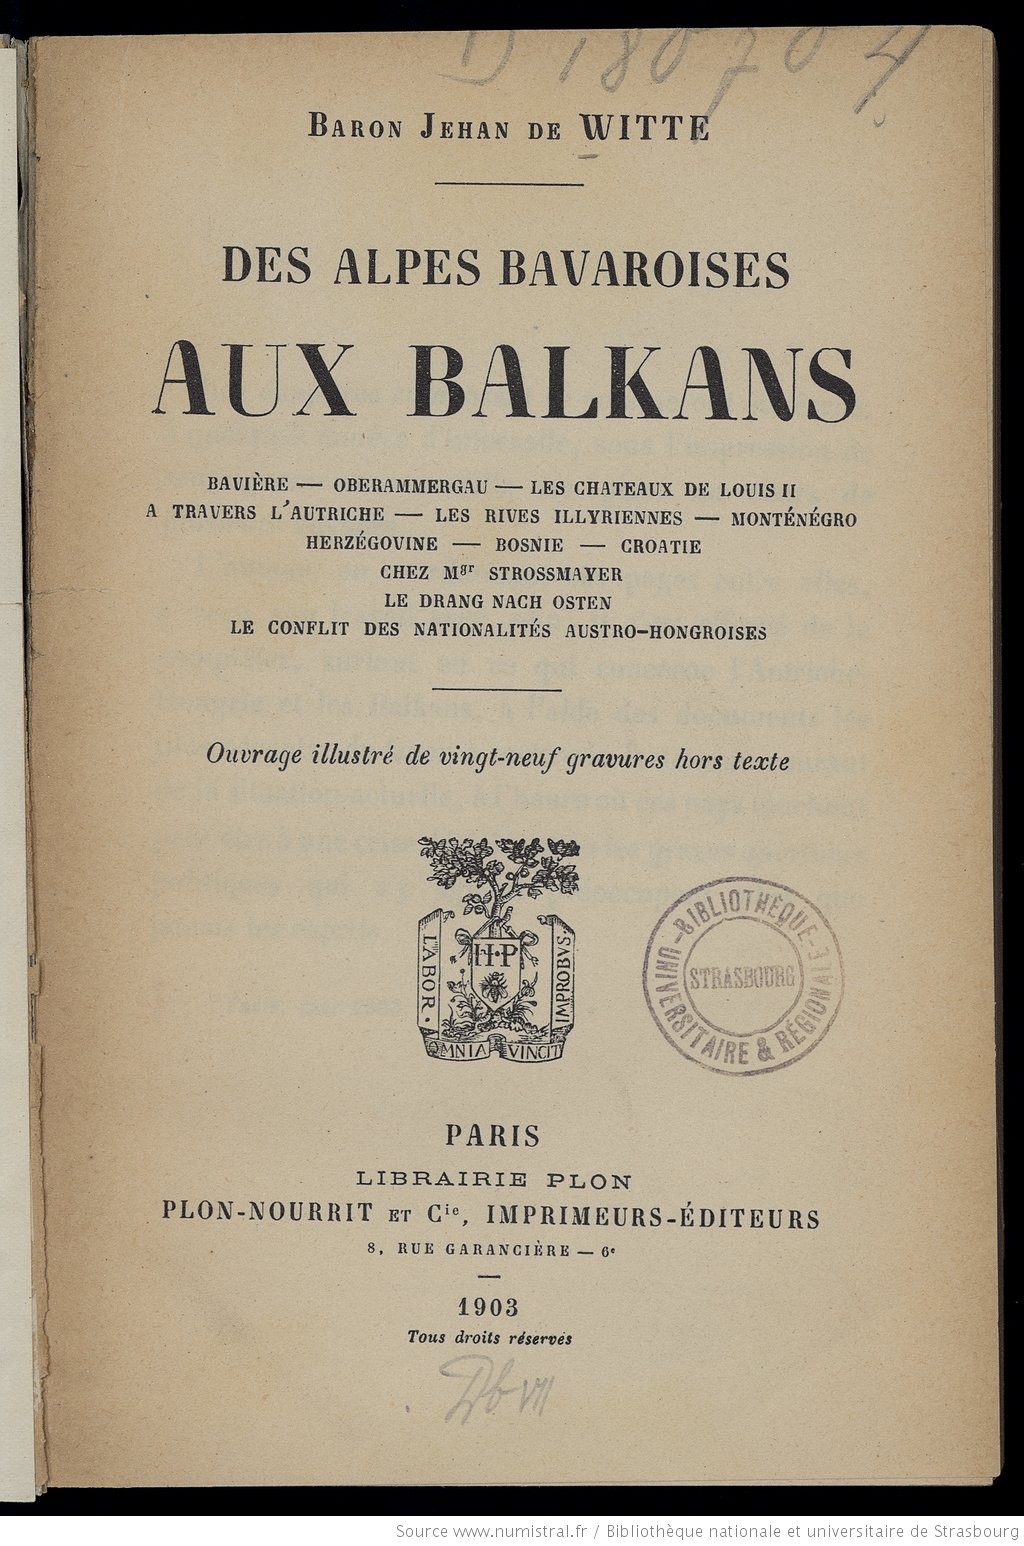 Des alpes bavaroises aux Balkans